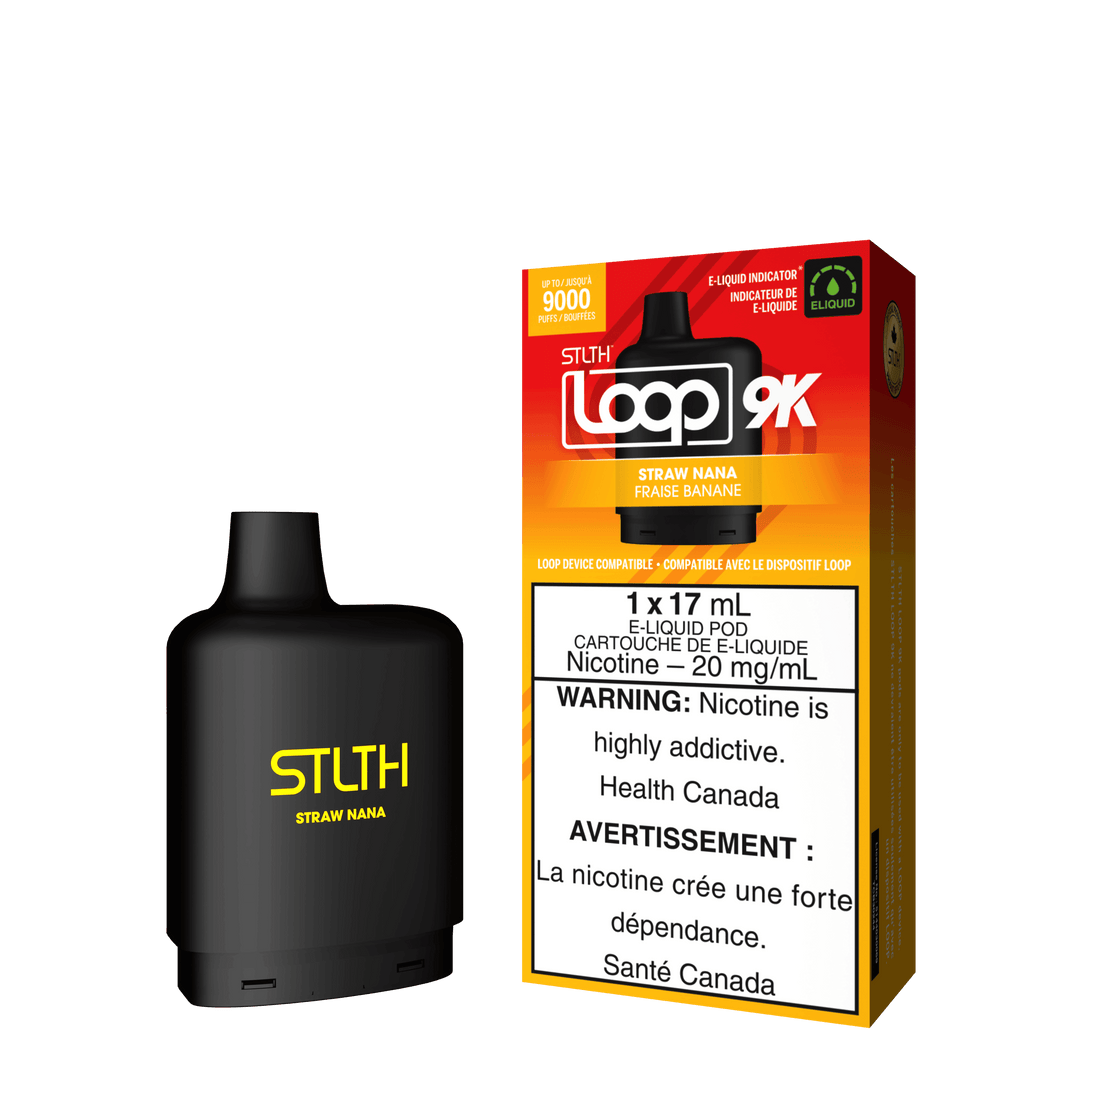 STLTH Loop 9K - Strawnana - Vapor Shoppe